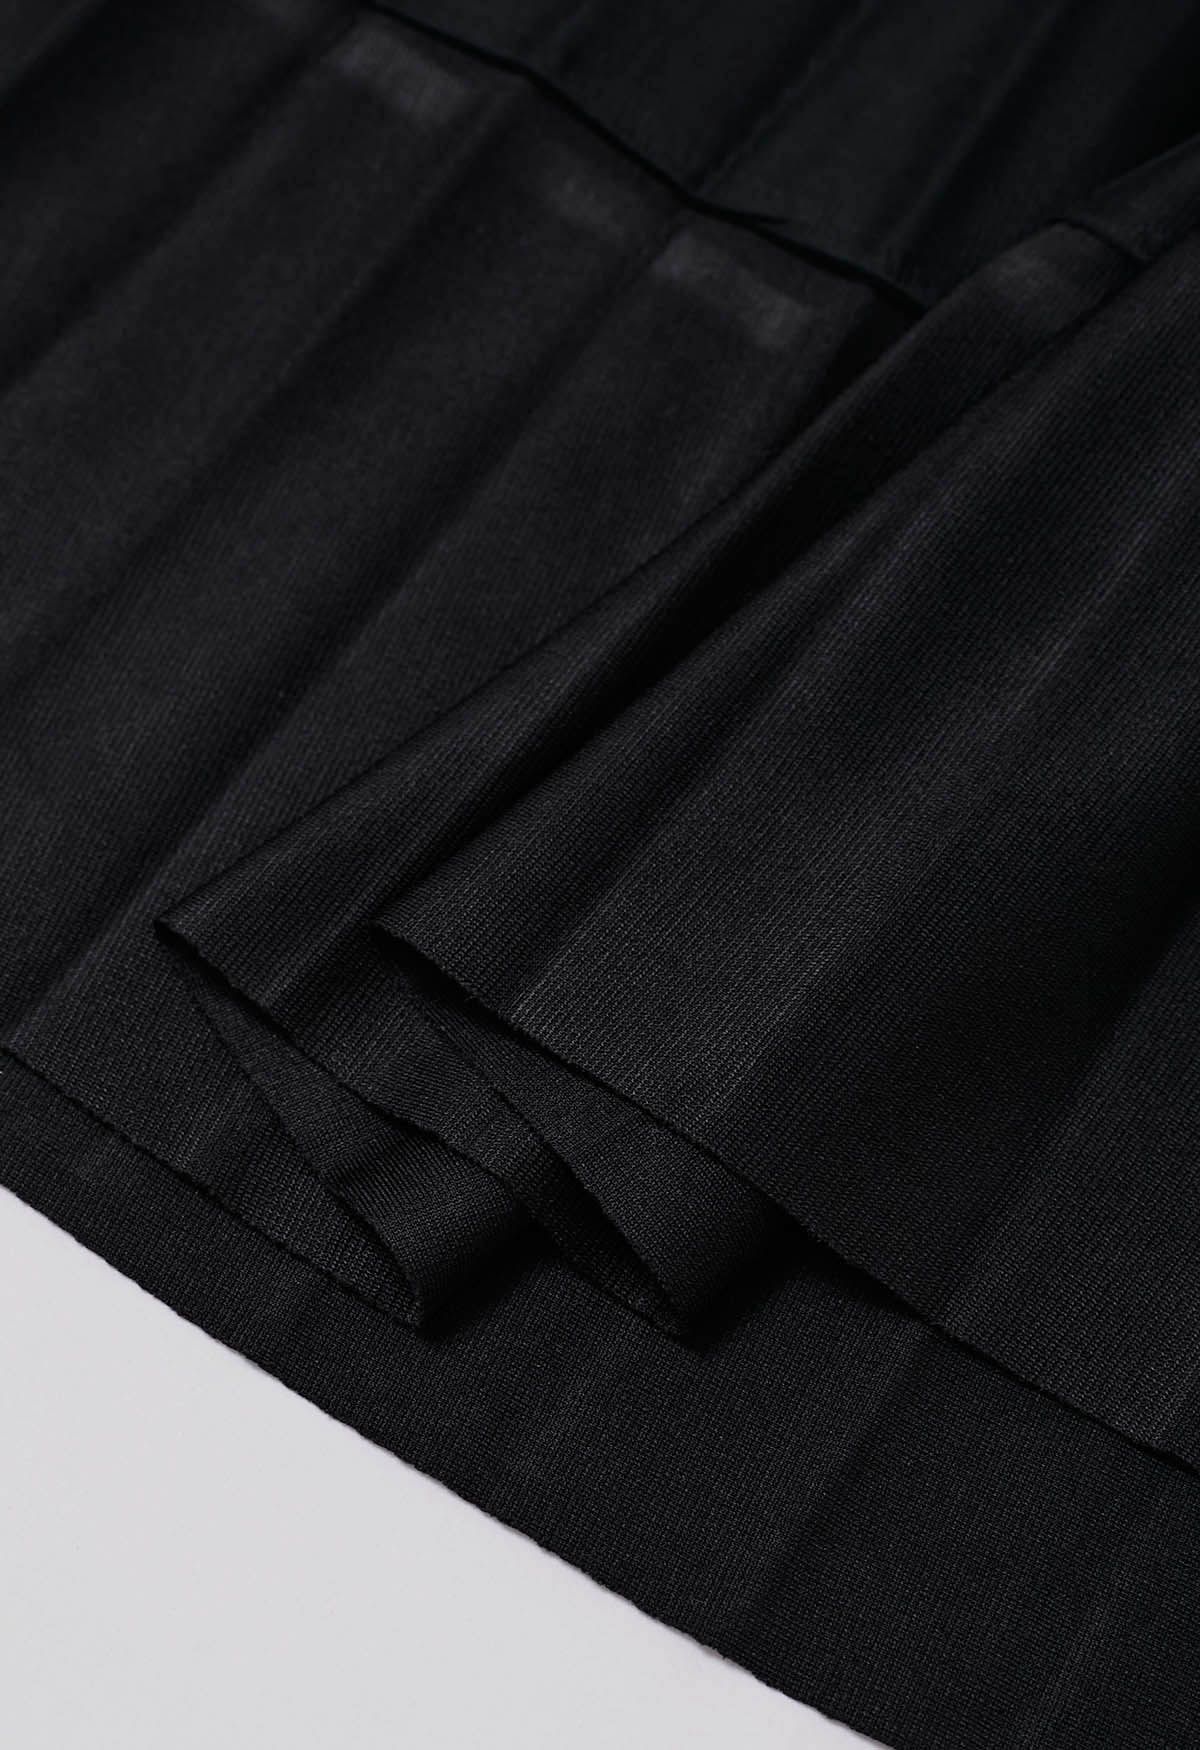 Falda de tul de malla plisada con dobladillo con paneles en negro